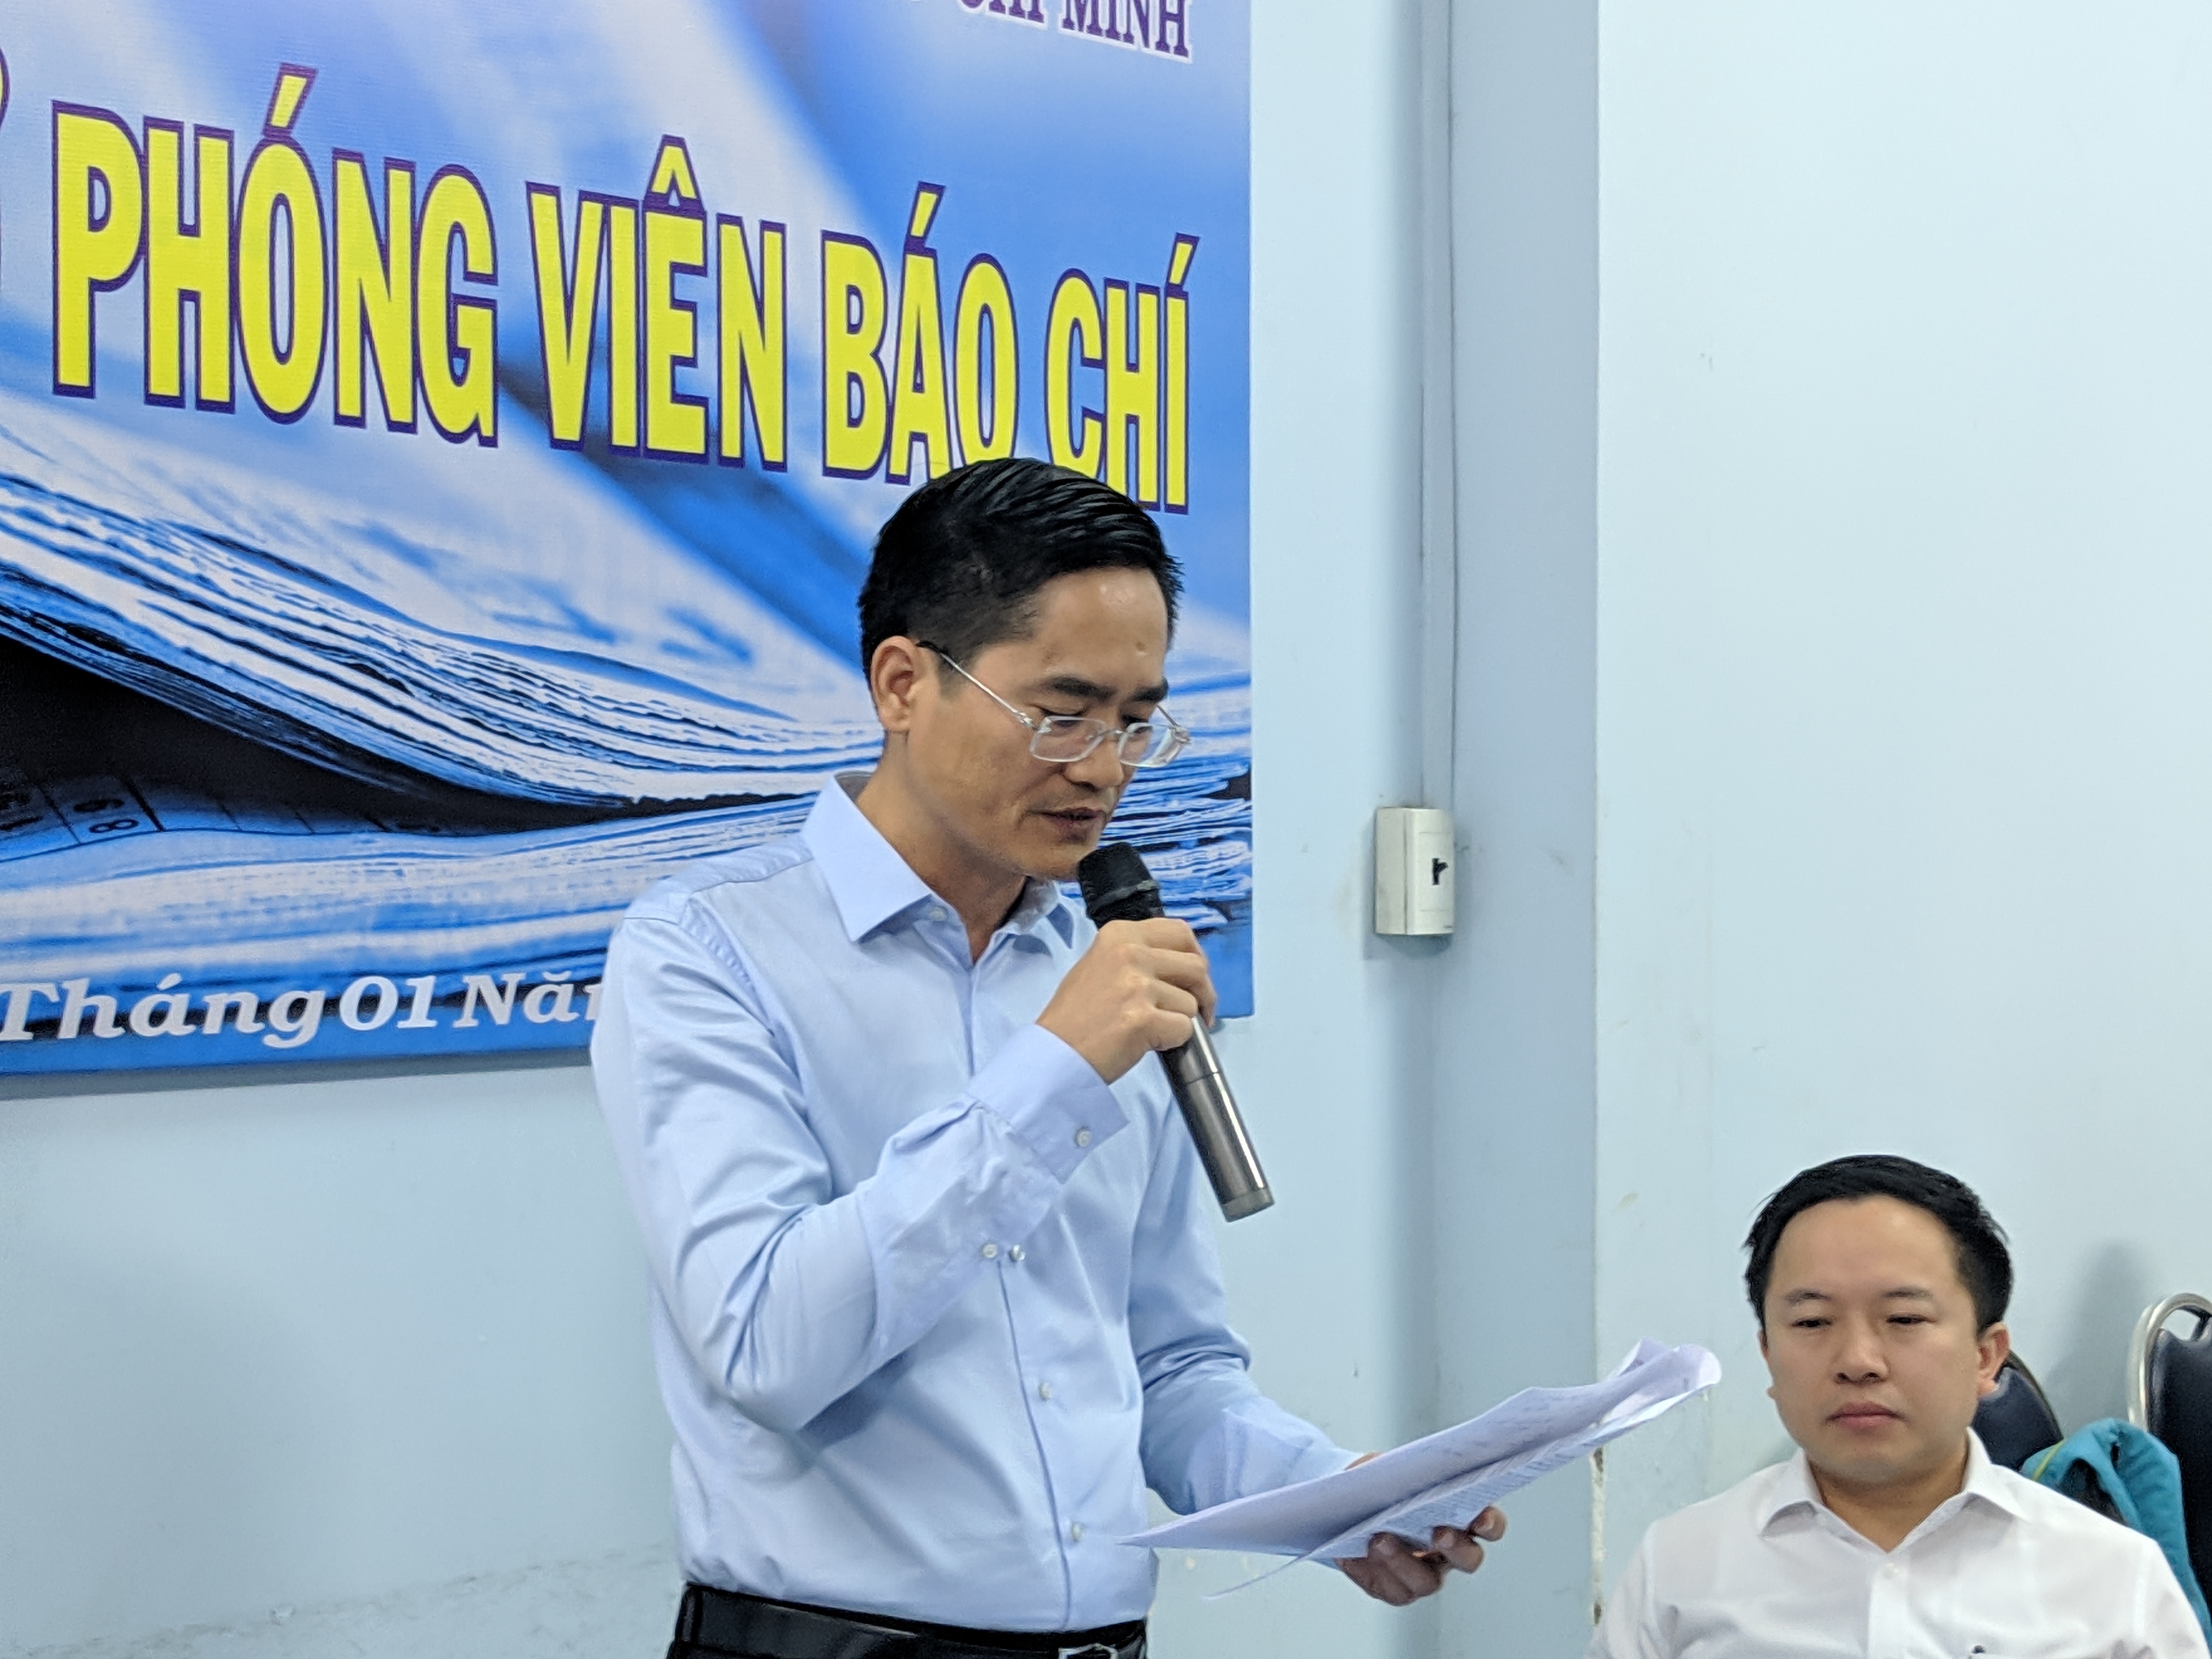 Ông Trần Quang Lâm - giám đốc Sở GTVT TPHCM chia sẻ tại buổi cafe báo chí tháng 1/2020 